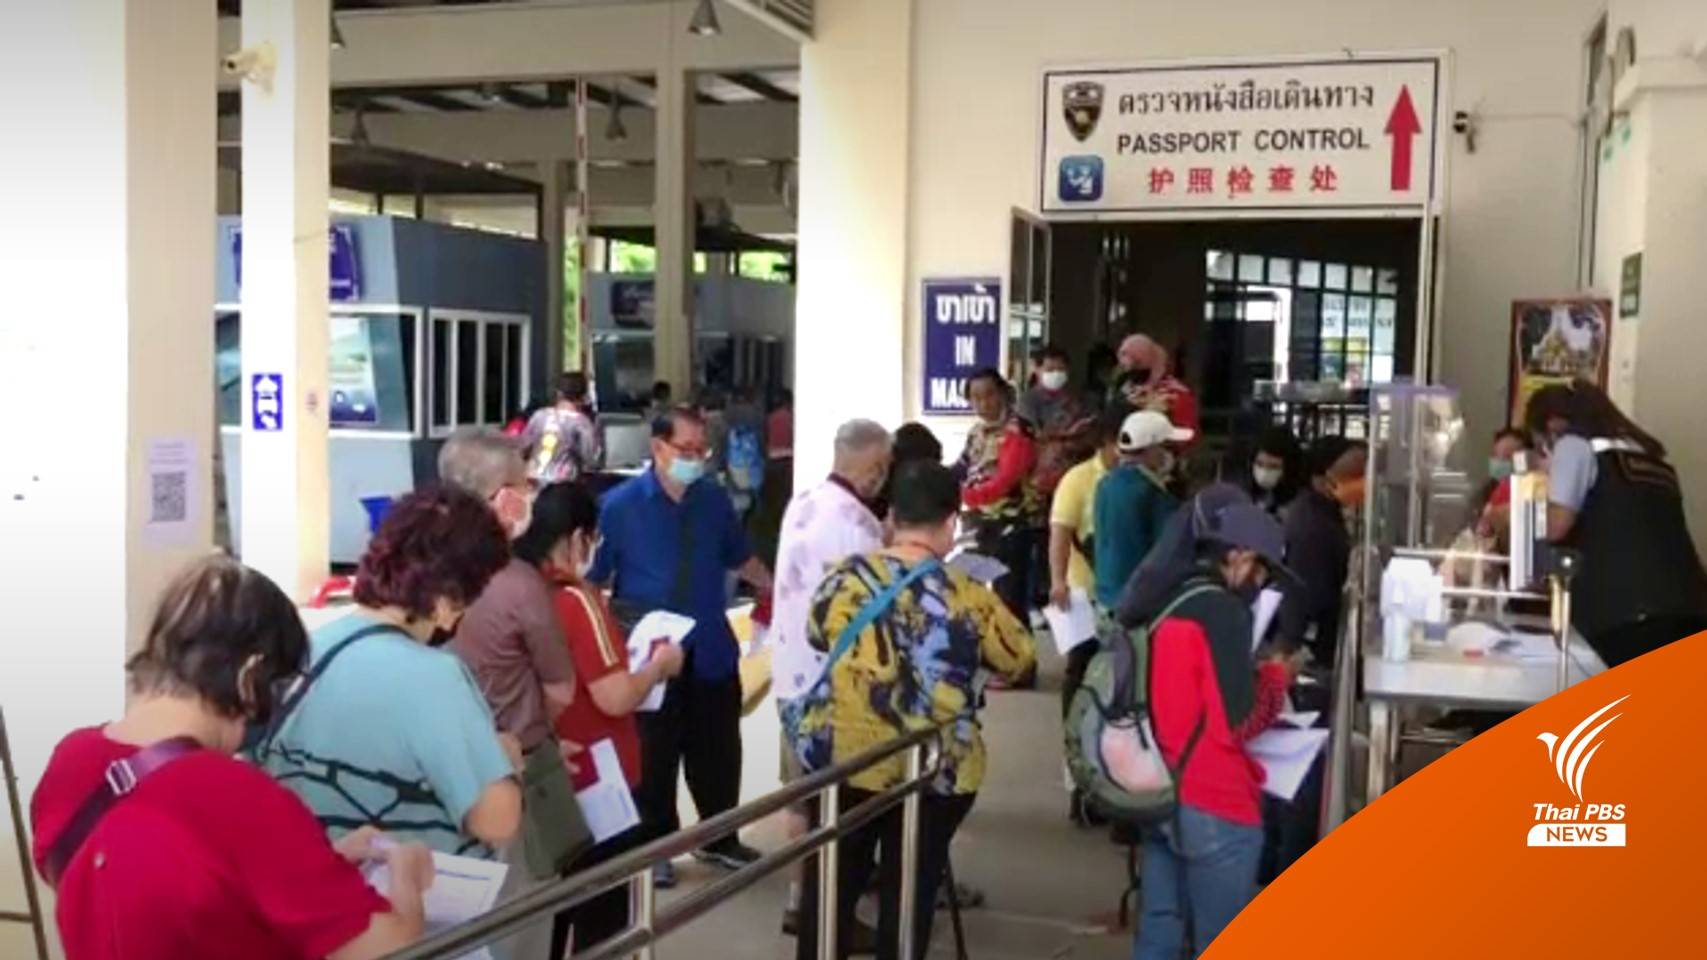 นักท่องเที่ยวเพิ่มขึ้น ชายแดนคึกคัก หลังยกเลิกลงทะเบียน Thailand Pass